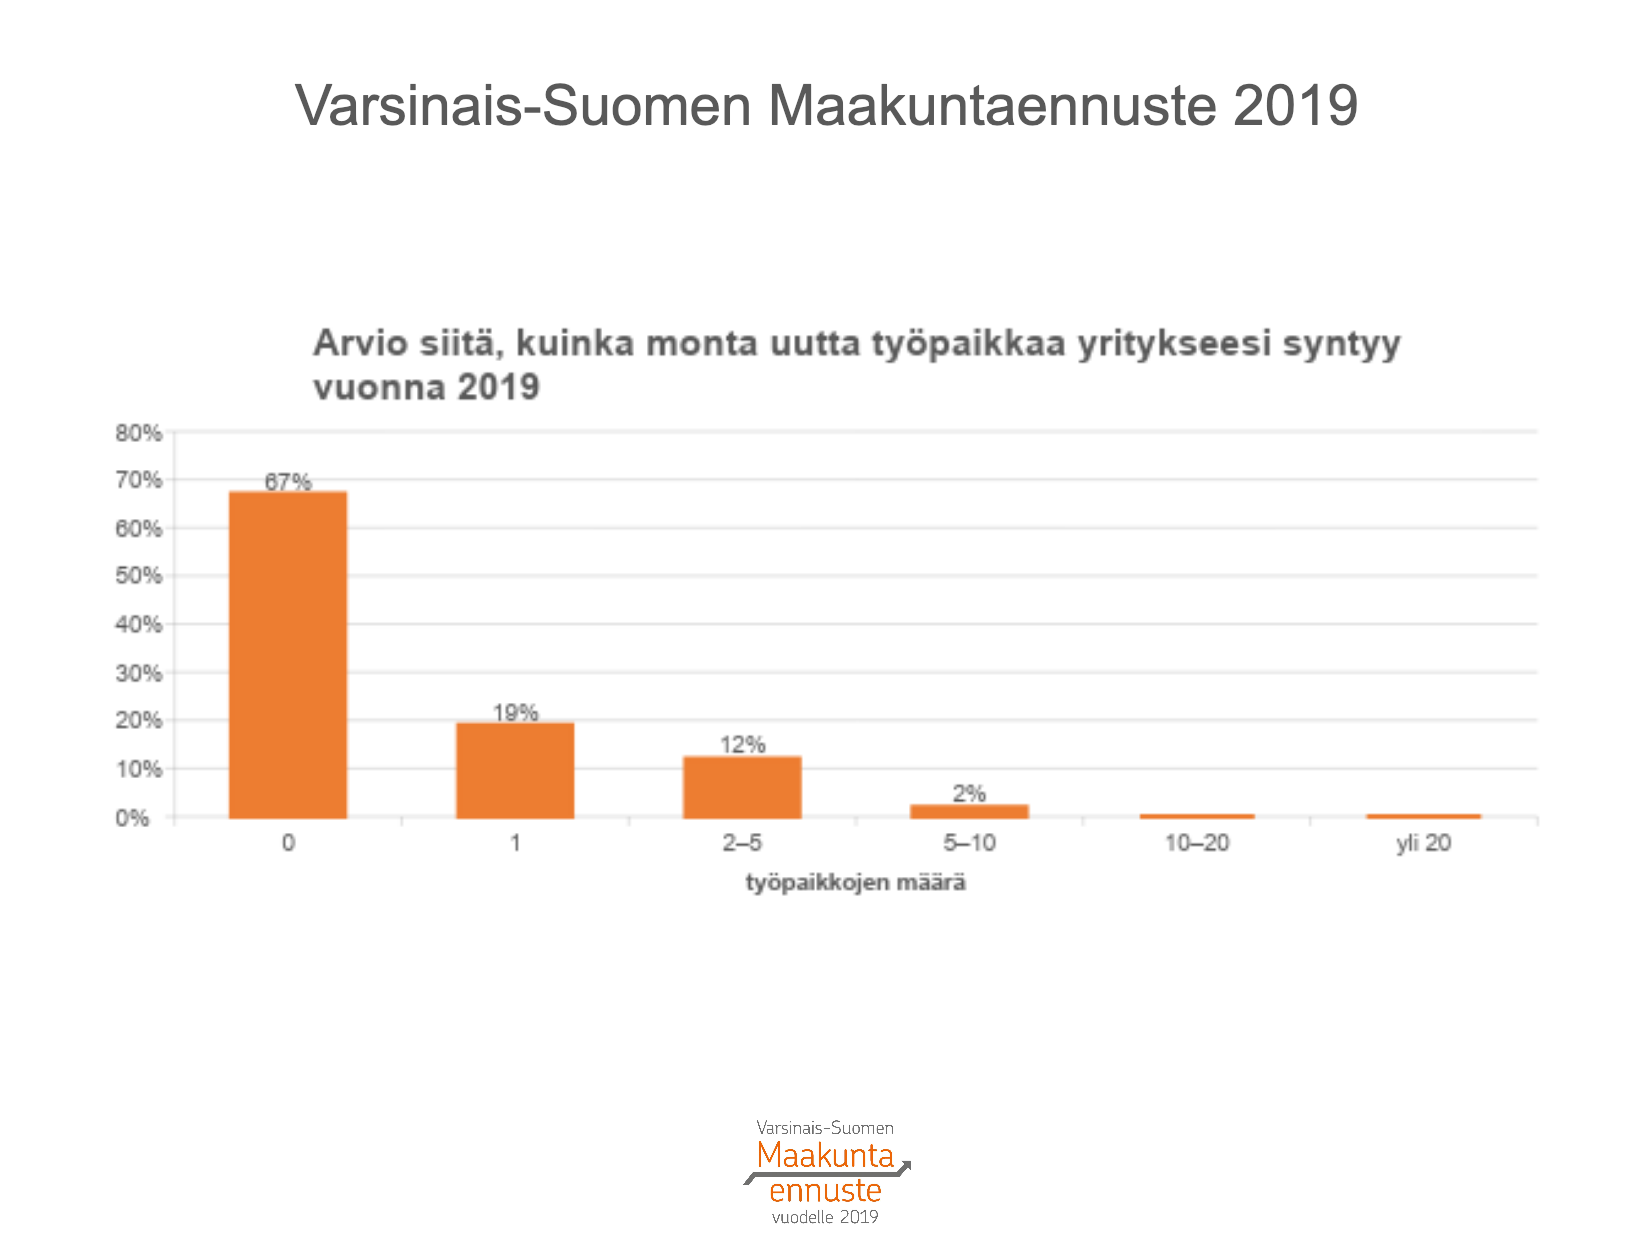 Varsinais-Suomen uudet työpaikat